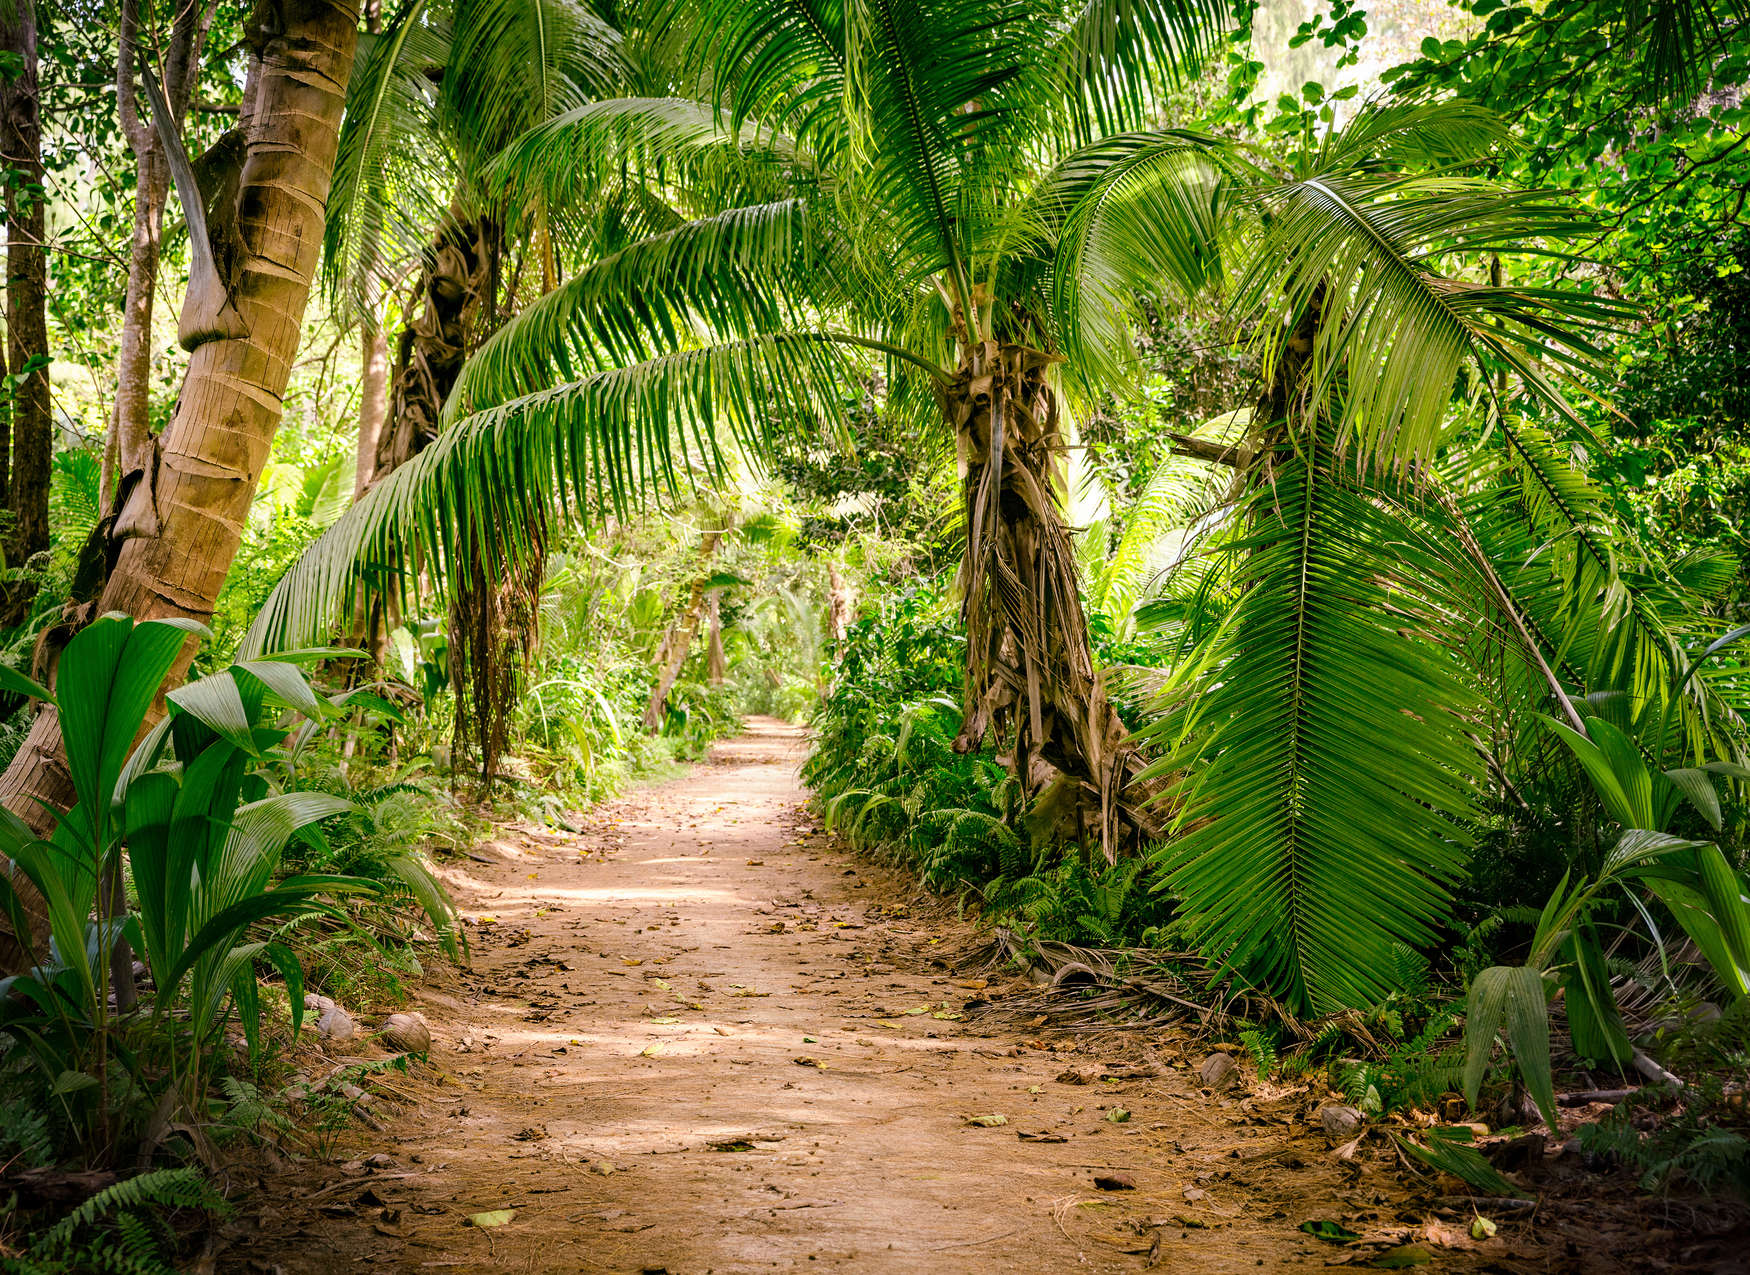             Sentier des palmiers à travers un paysage tropical - Vert, Marron
        